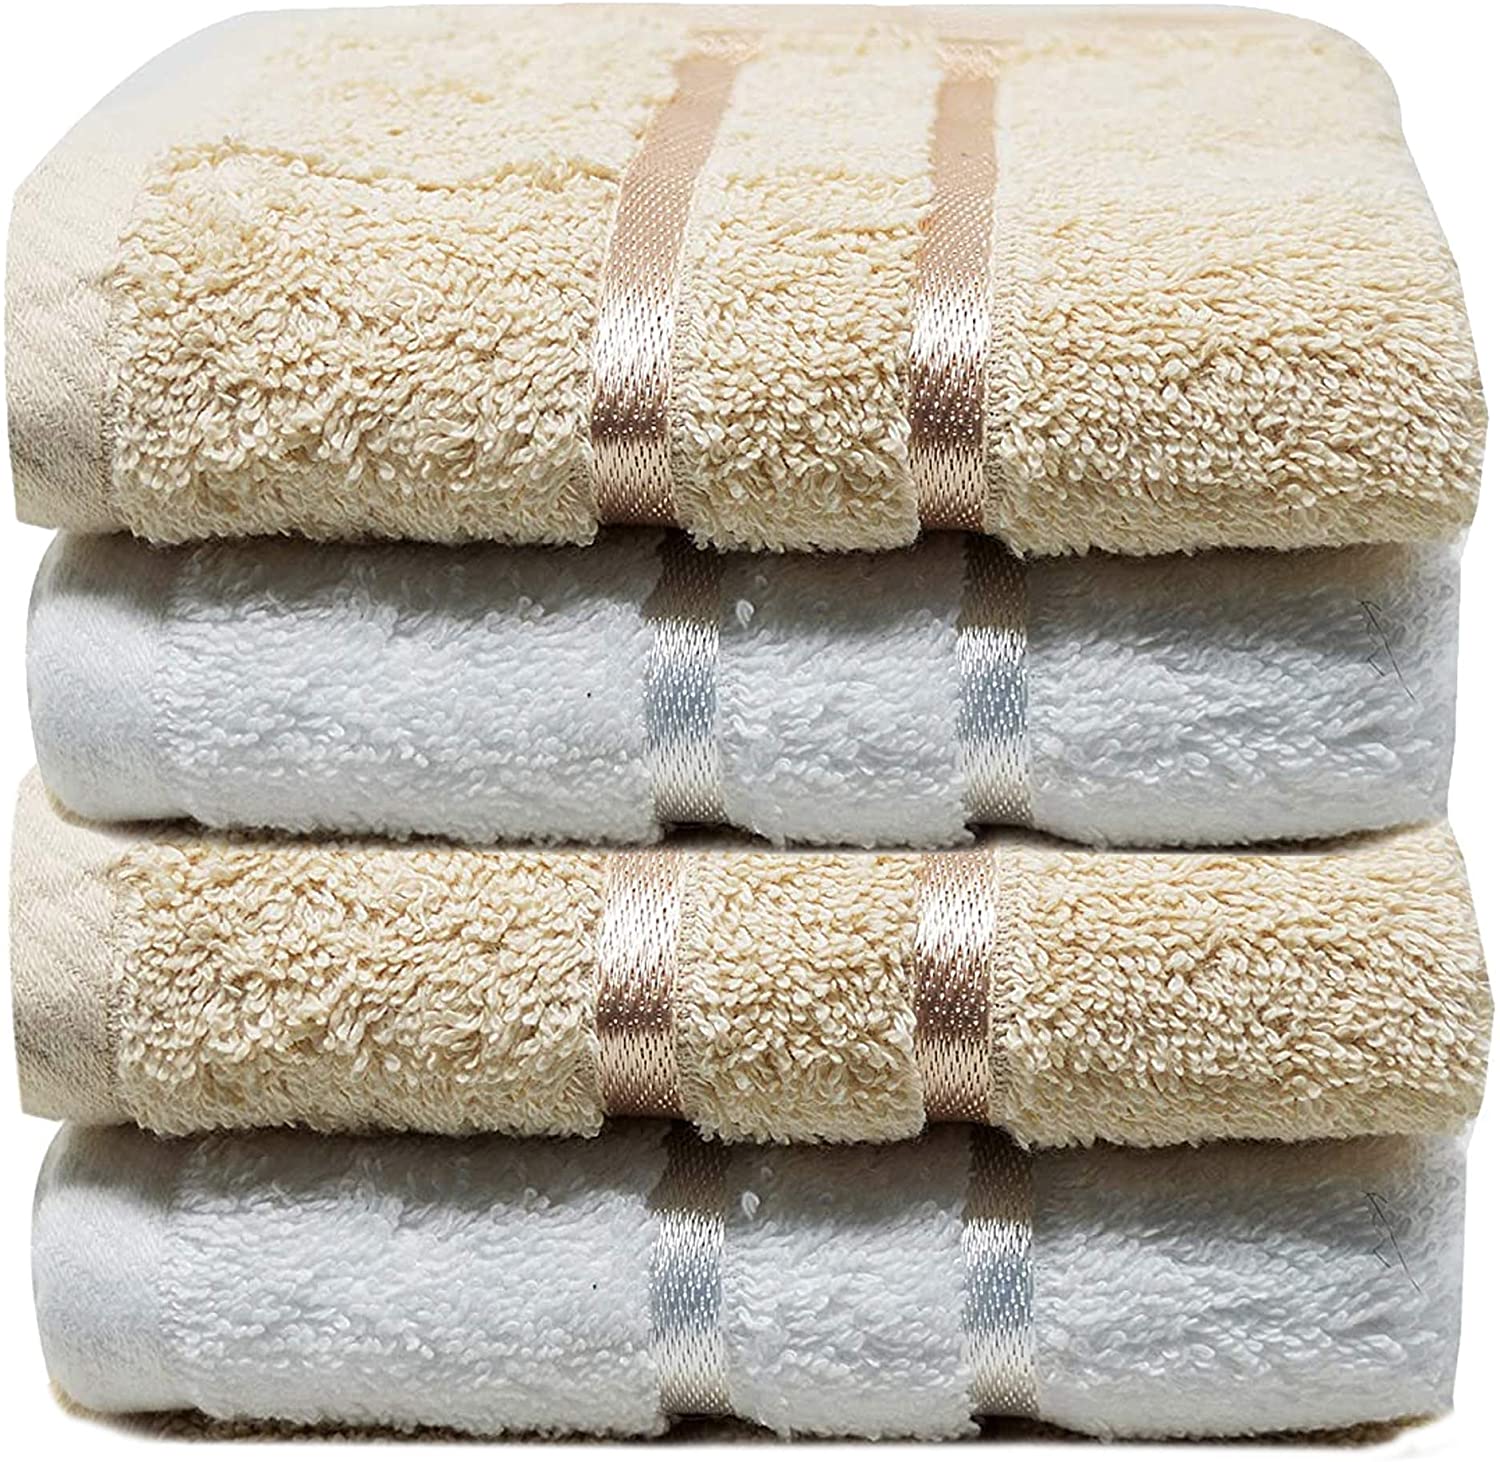 Casandra-Luxury-High-Quality-Soft-Washcloths